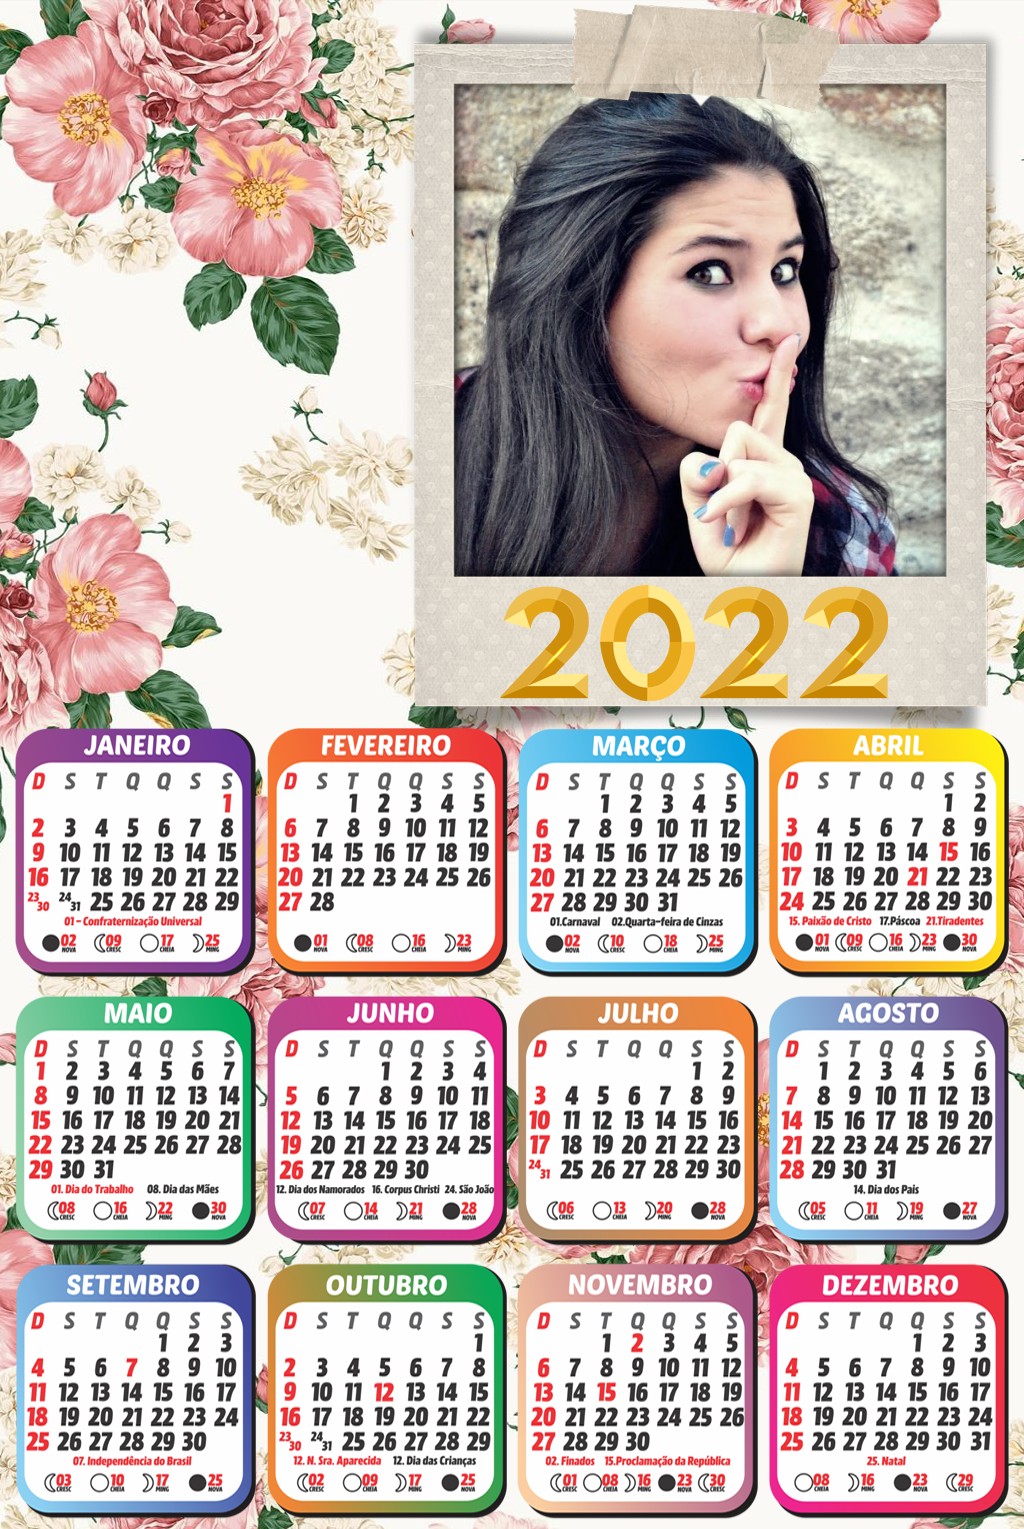 foto-efeito-moldura-vintage-polaroid-com-calendario-2022